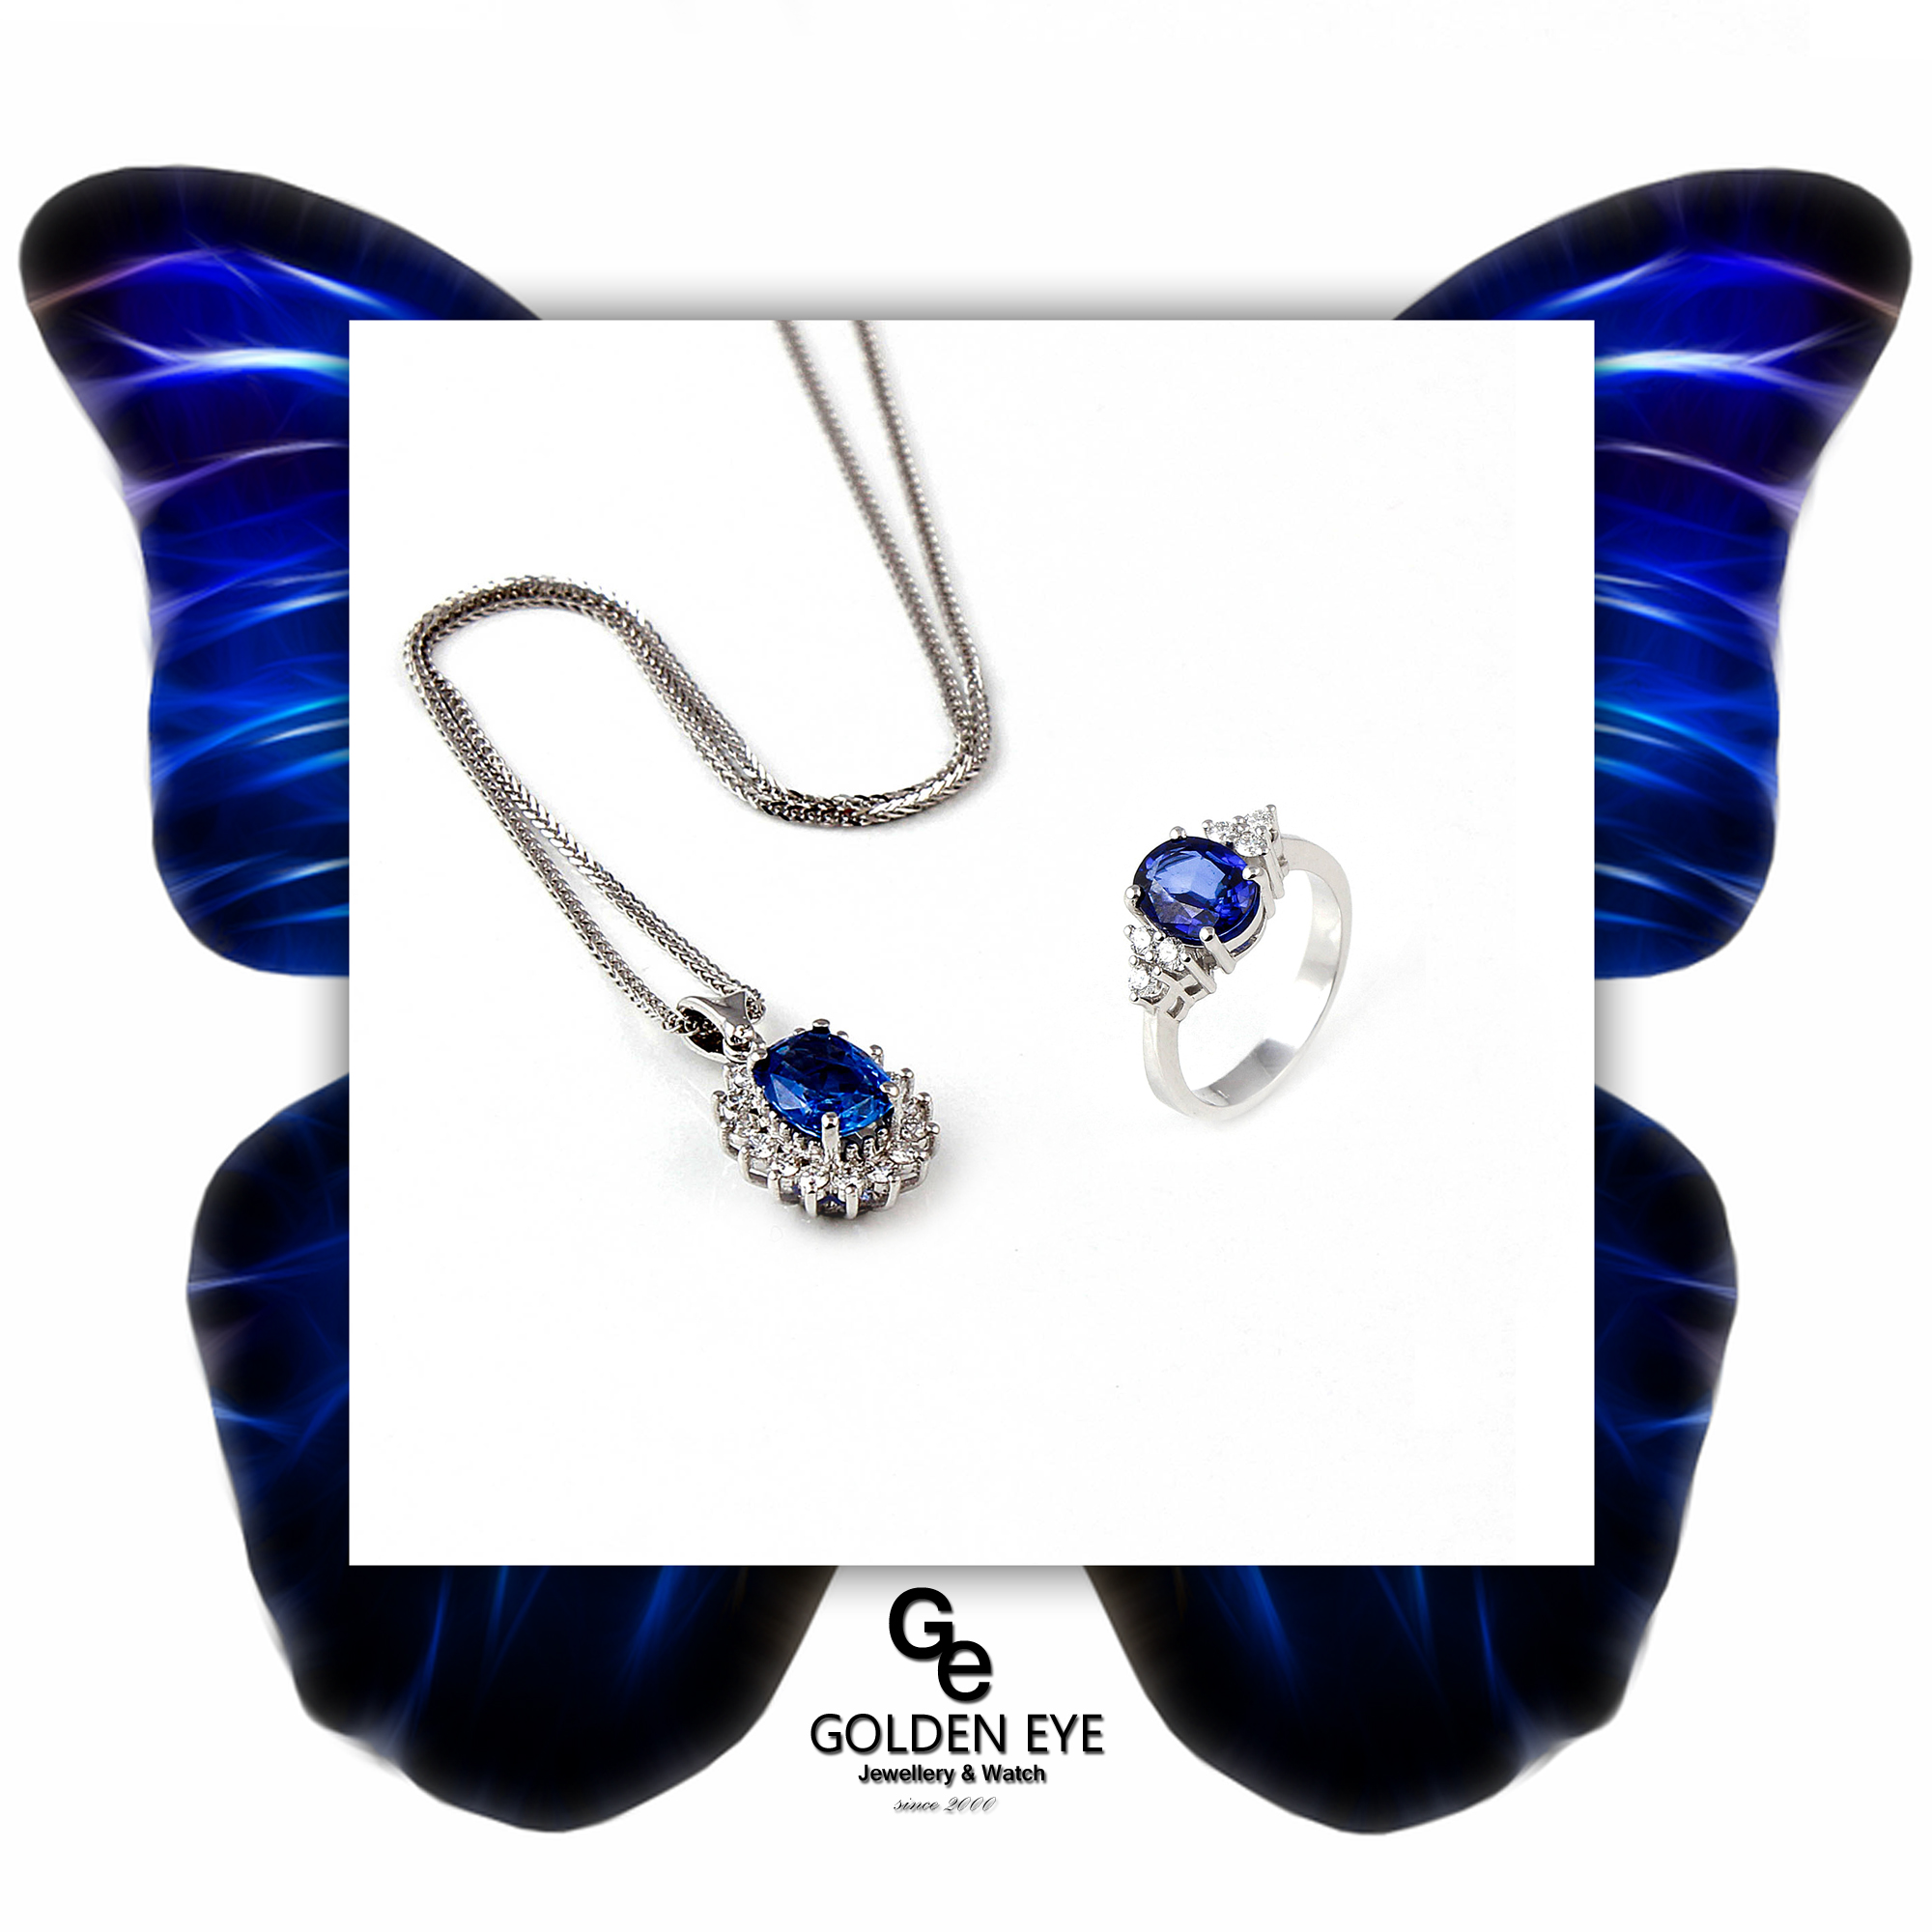 R033C Vitguldsring med Blue Saphire och diamanter